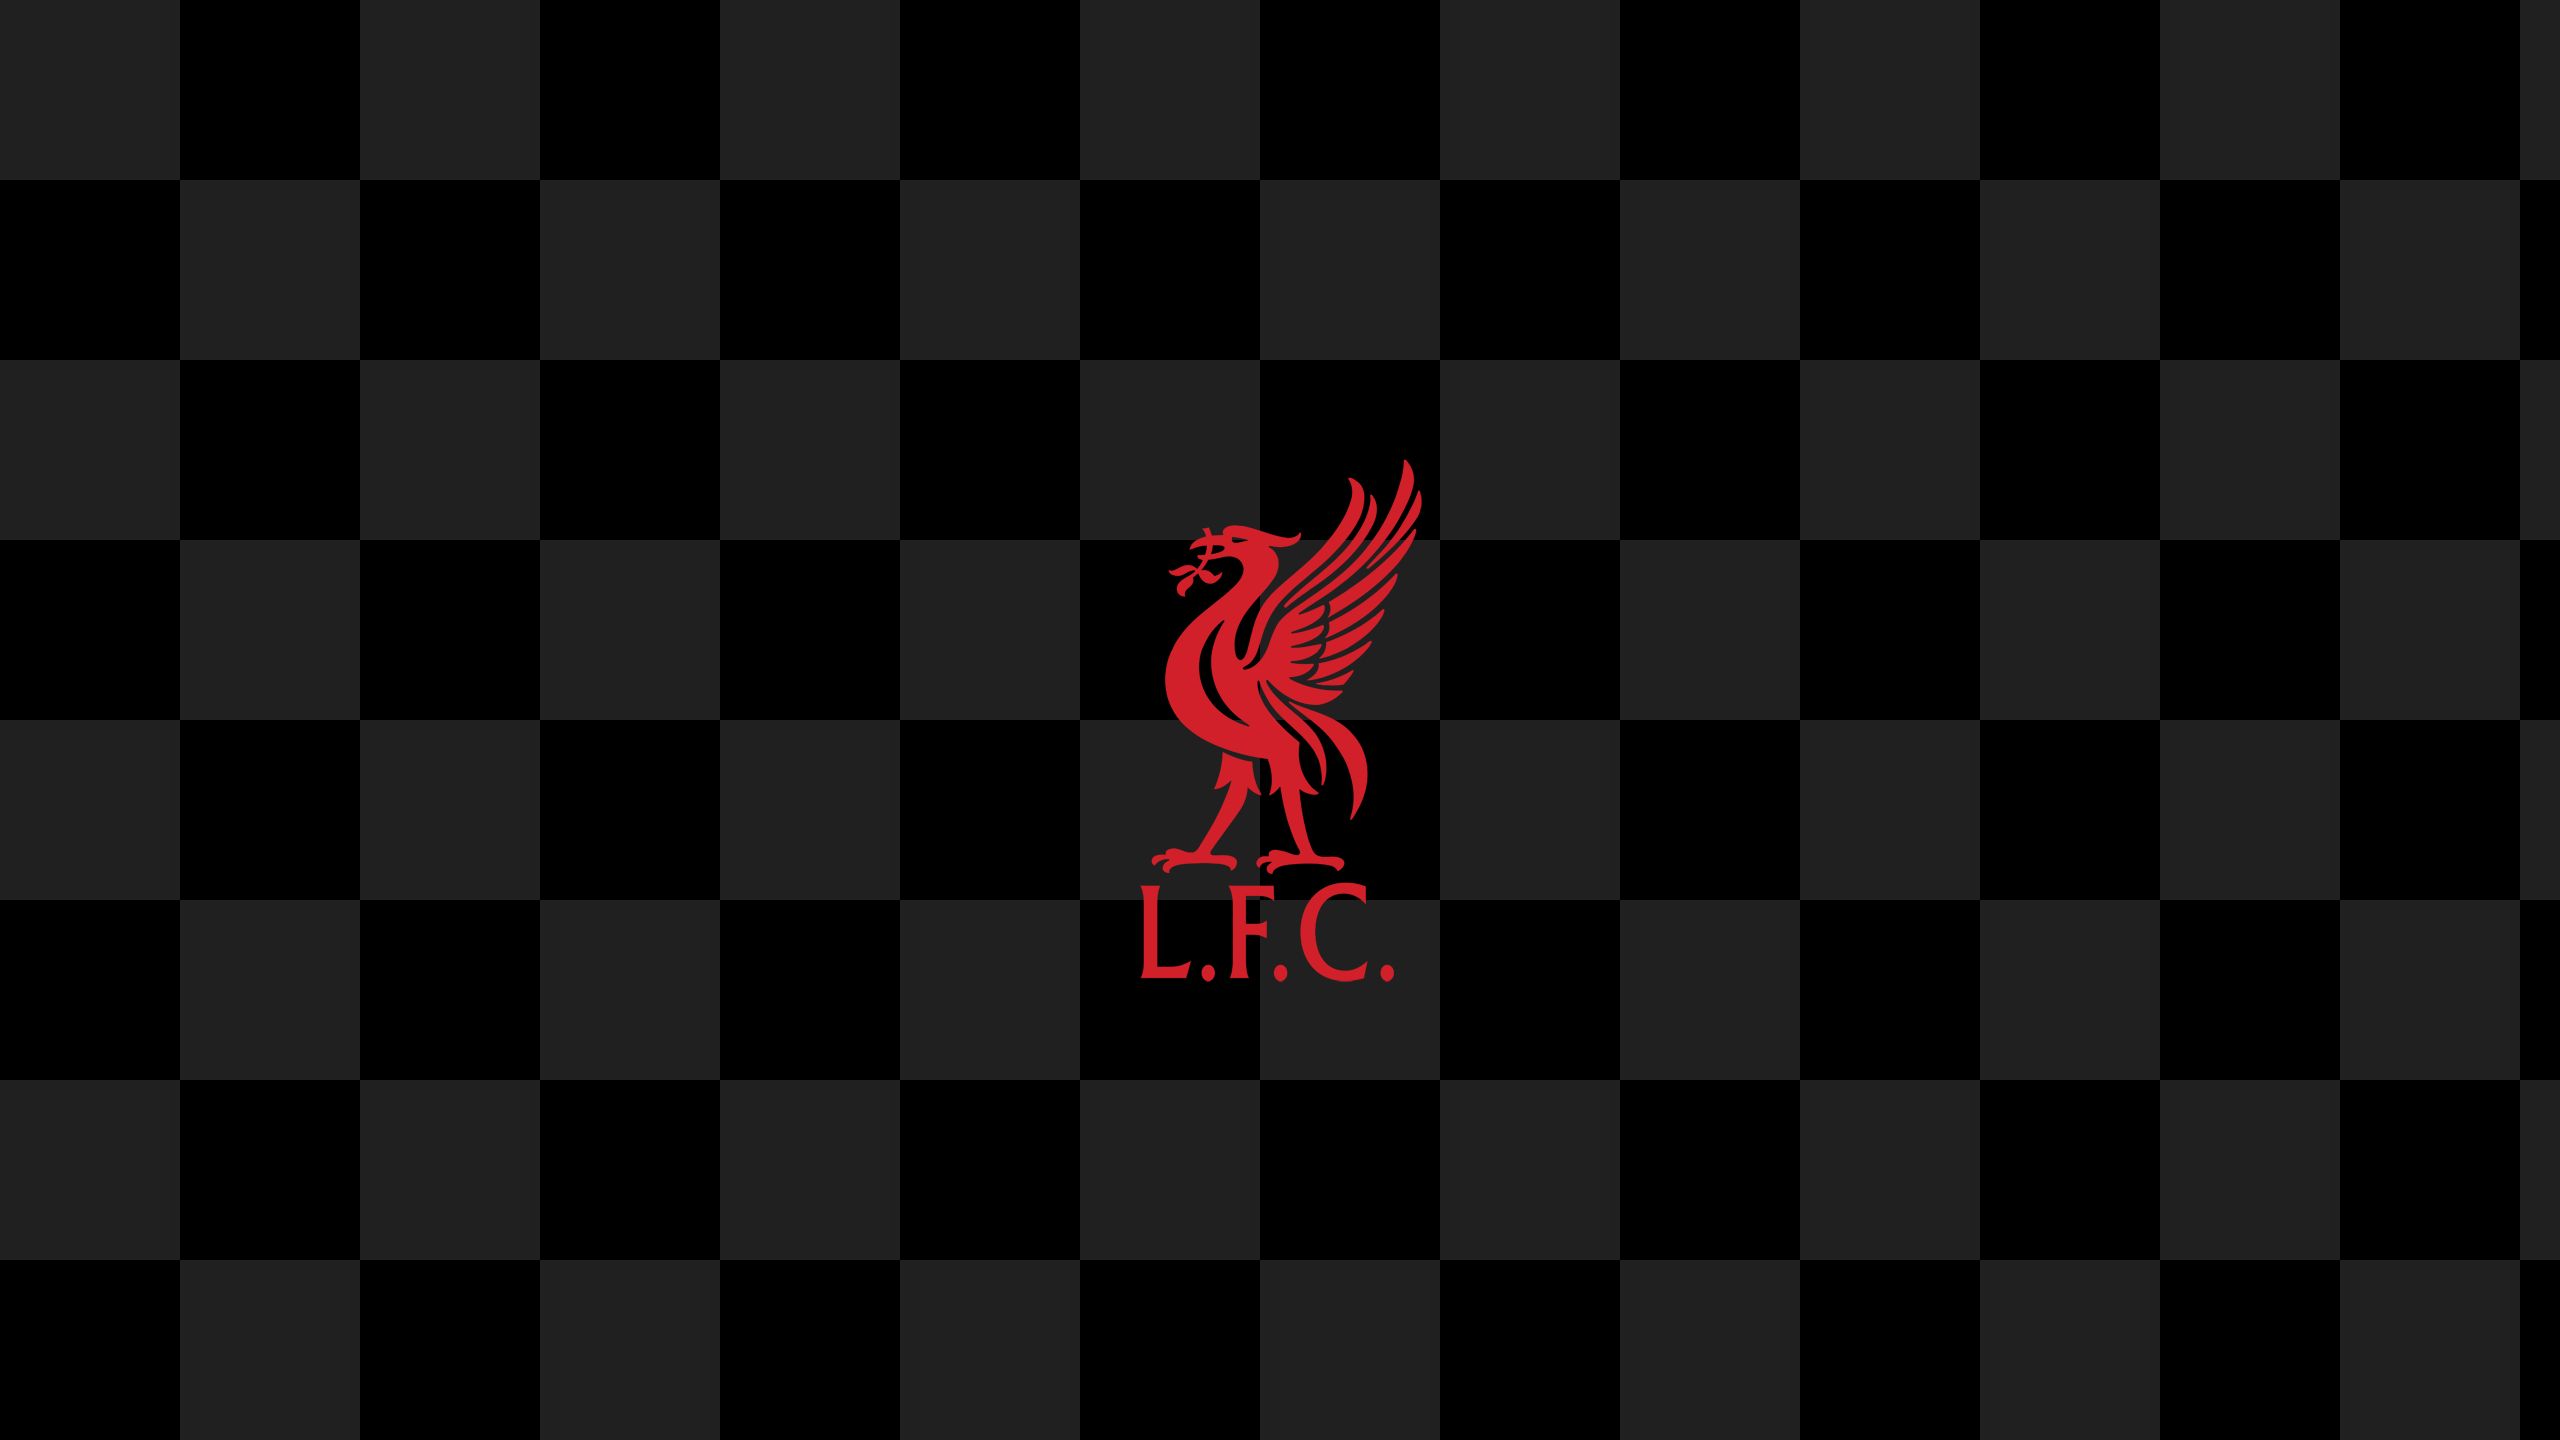 Soccer Logo Emblem được thiết kế tài tình sẽ khiến bạn cảm thấy tự hào khi đứng trước người hâm mộ bóng đá. Với hình ảnh rõ ràng, bạn có thể xem được mọi chi tiết về logo của đội bóng Liverpool và dành cho mình điều đó chút niềm vui.